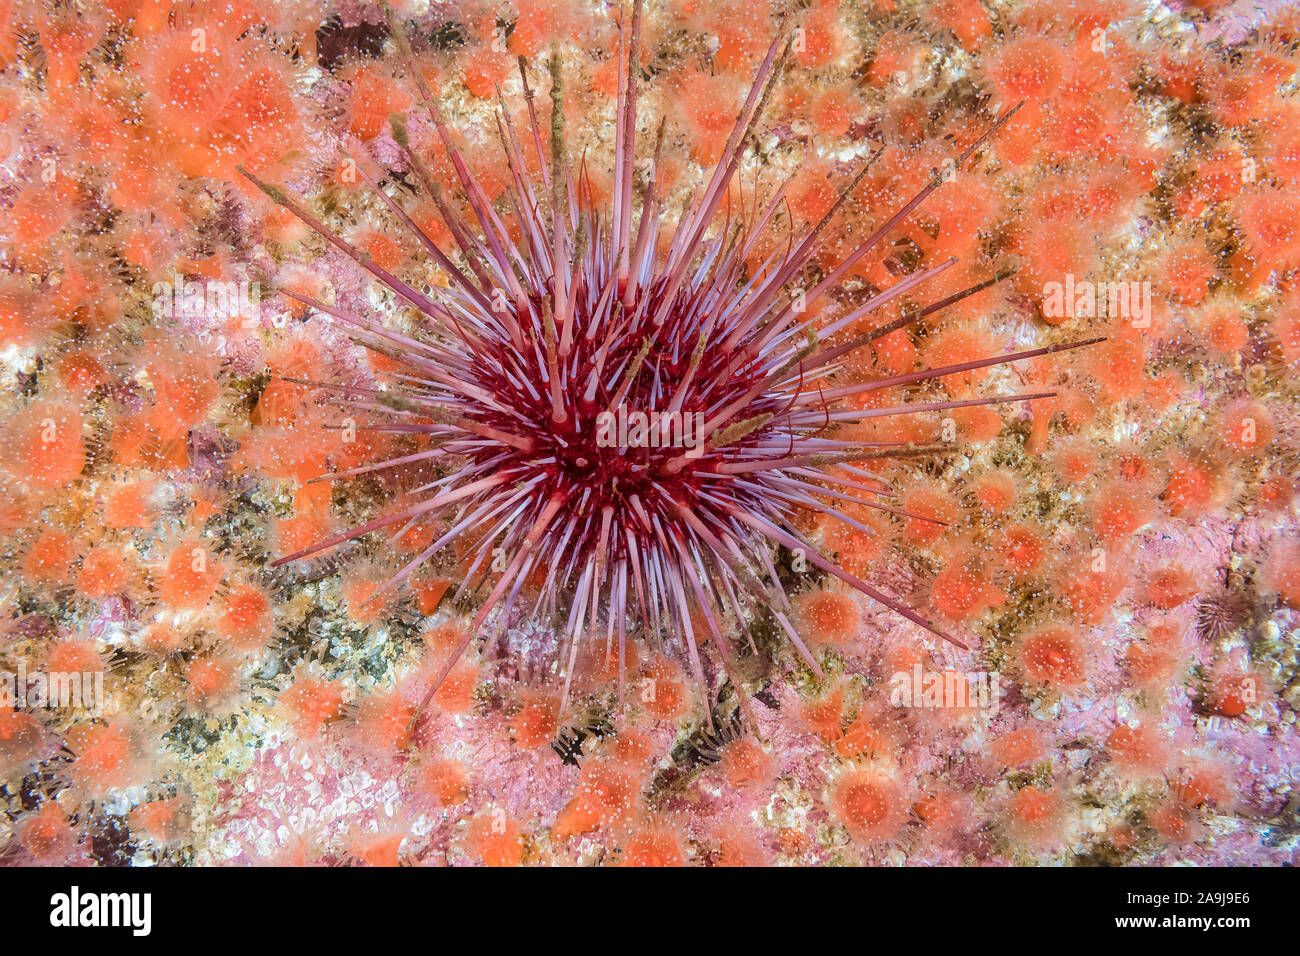 Red Sea Urchin, Mesocentrotus franciscanus, fraise, anmone Corynactis californica et de corallines encroûtantes, Barkley Sound, l'île de Vancouver Banque D'Images